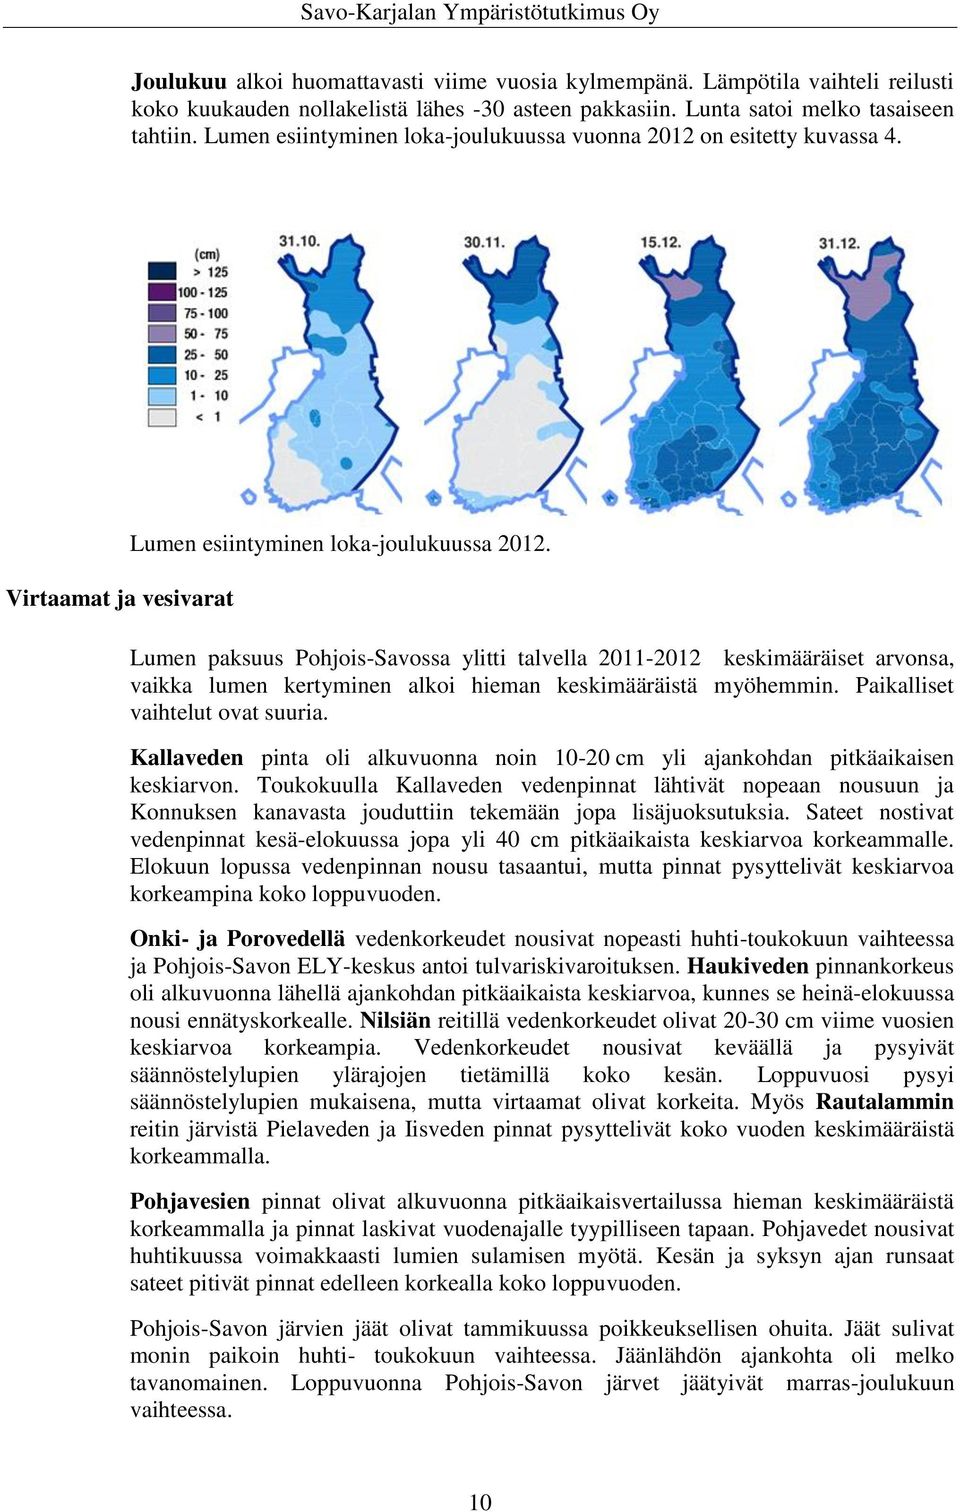 Lumen paksuus Pohjois-Savossa ylitti talvella 2011-2012 keskimääräiset arvonsa, vaikka lumen kertyminen alkoi hieman keskimääräistä myöhemmin. Paikalliset vaihtelut ovat suuria.